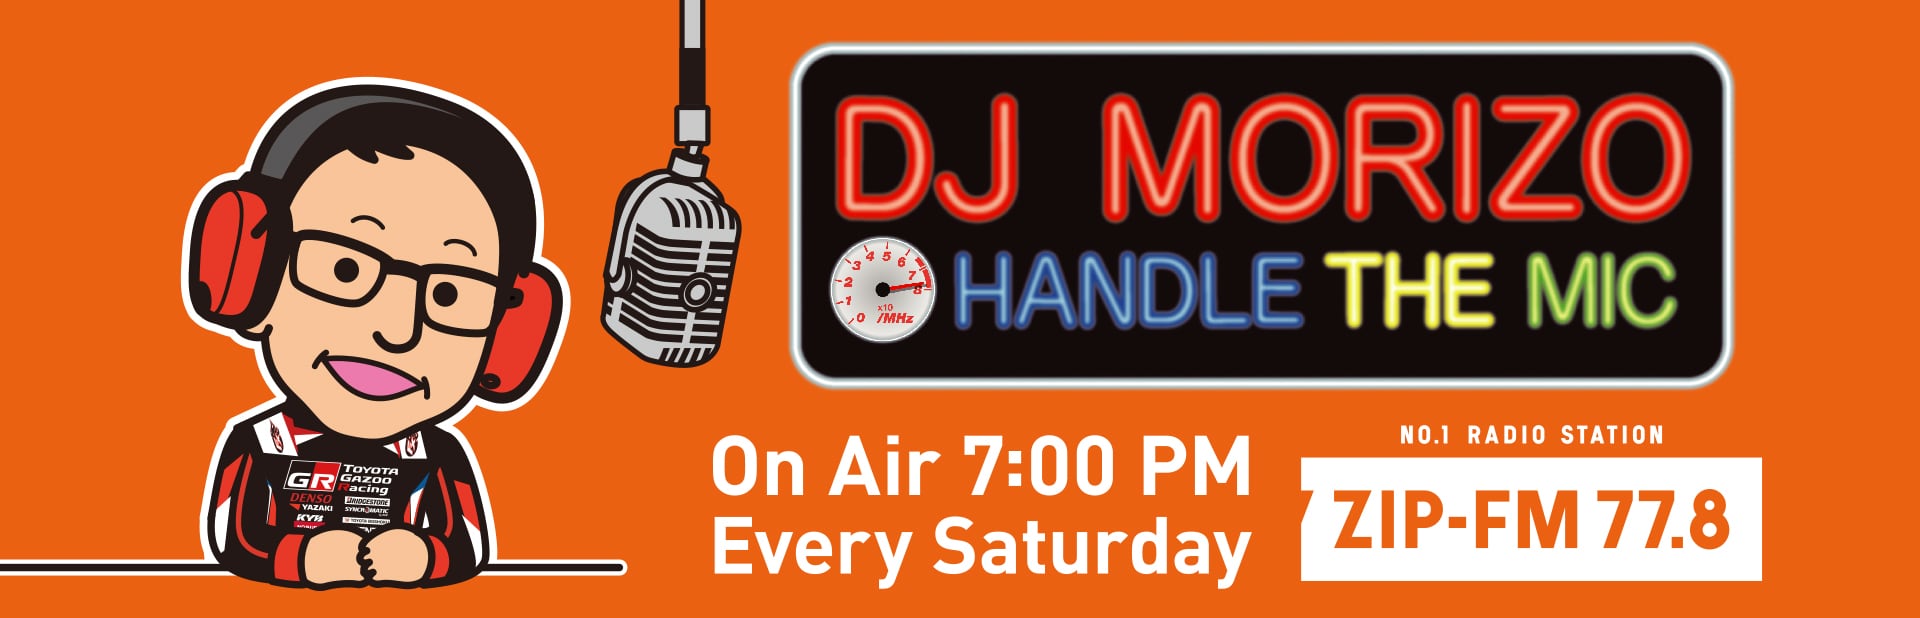 ラジオレギュラー番組「DJ MORIZO HANDLE THE MIC」が8月4日（土）19:00より放送開始